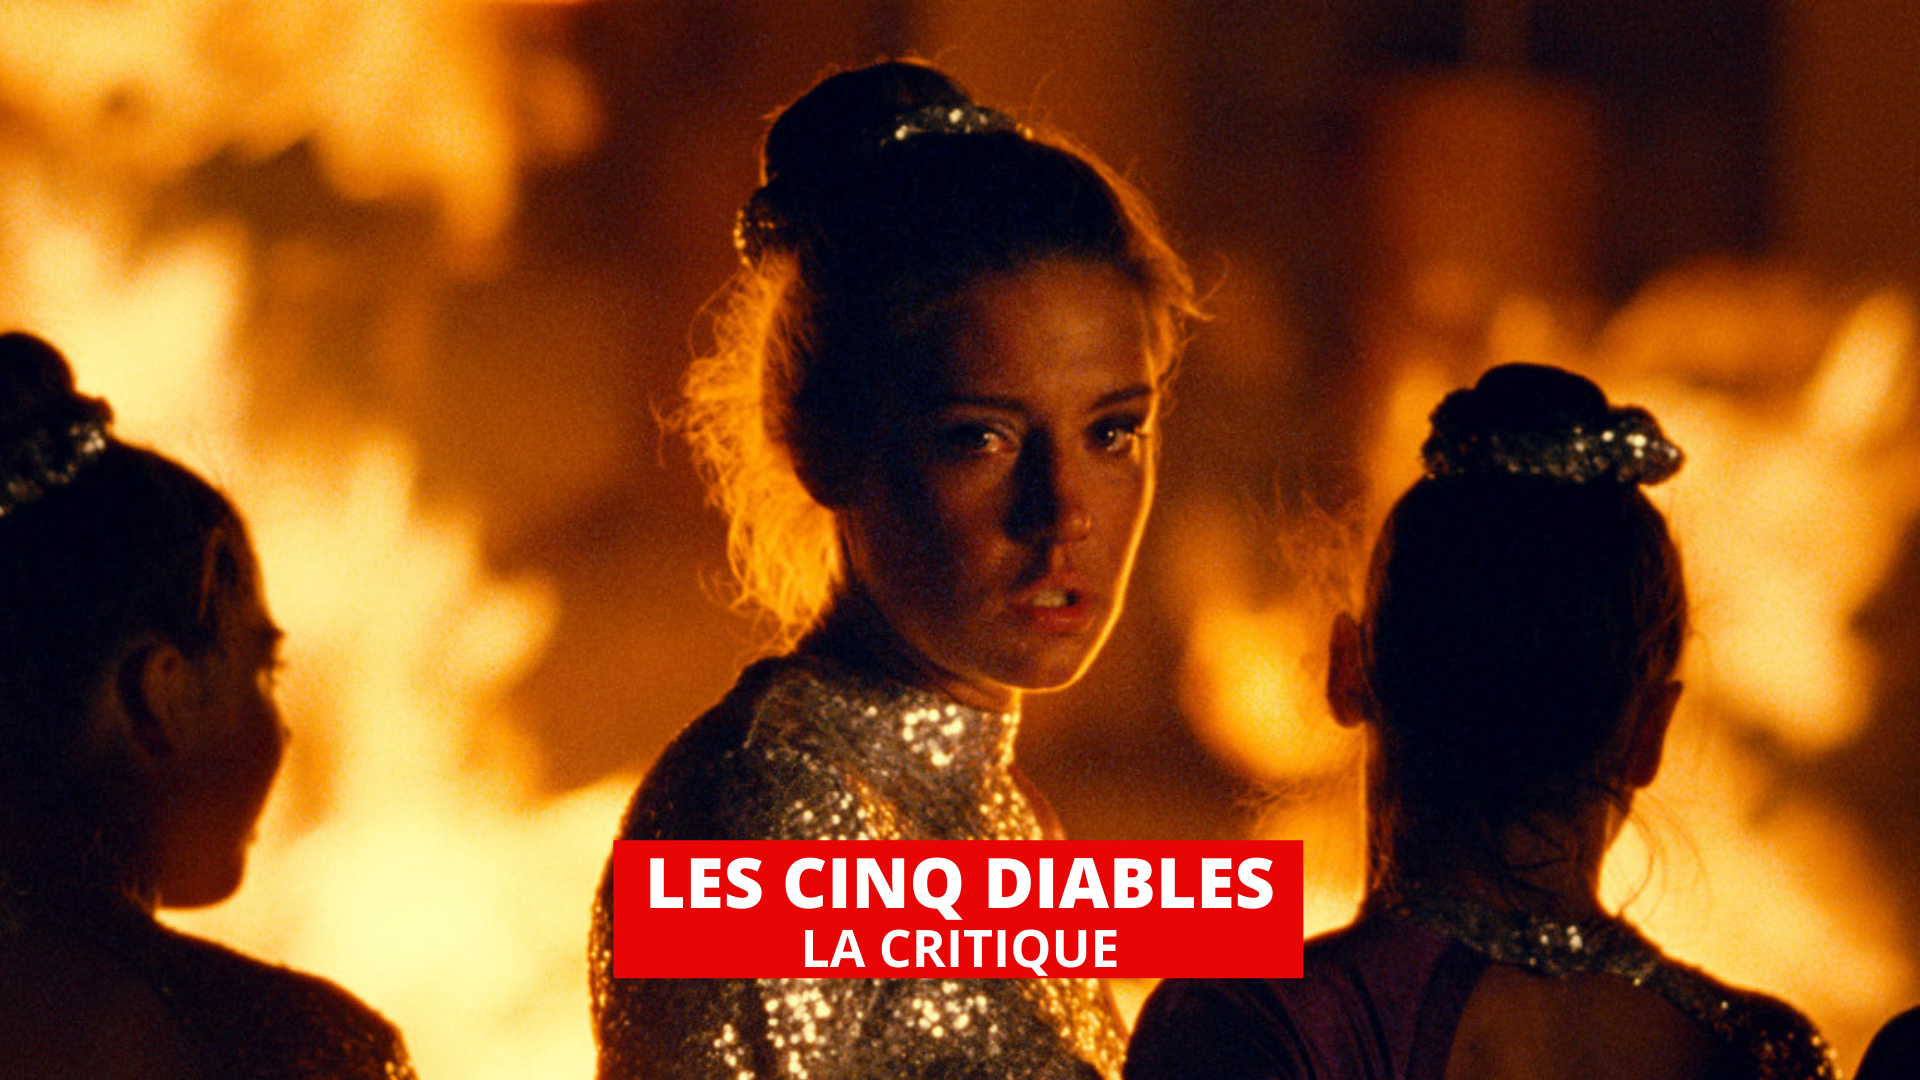 Les Cinq diables : Adèle Exarchopoulos dans un drame romantico-fantastique